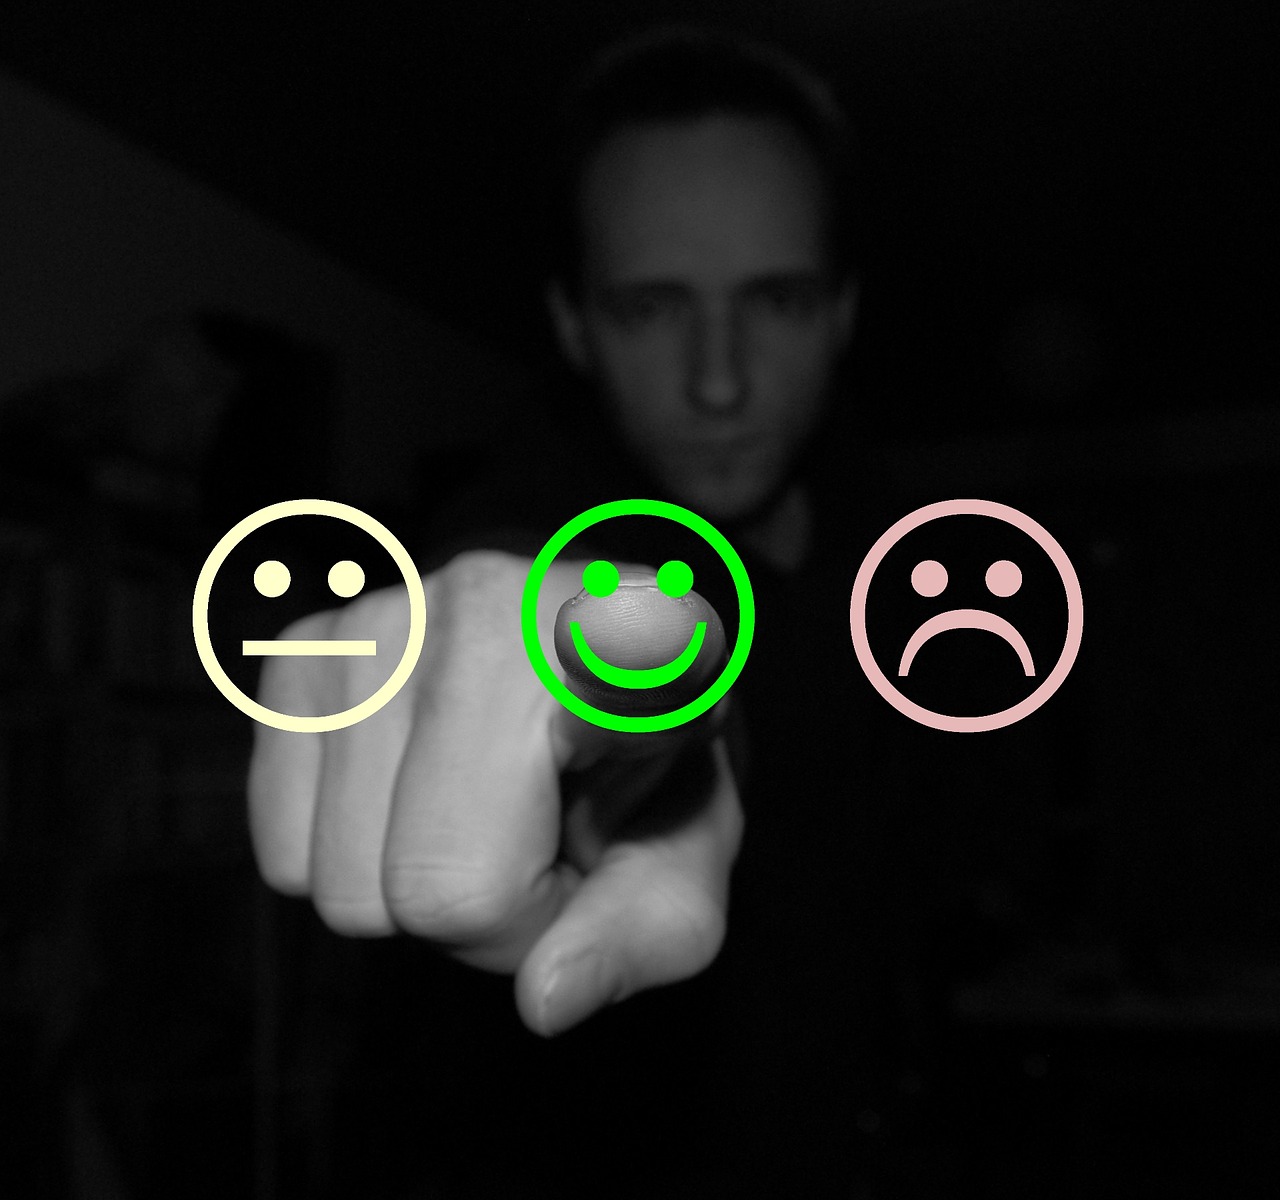 Foto de um homem sério apontando o dedo indicador pra frente, com os braços esticados. Na tela, três emojis em formato de arte. O primeiro está sem reação, o segundo está feliz e o terceiro está triste. 